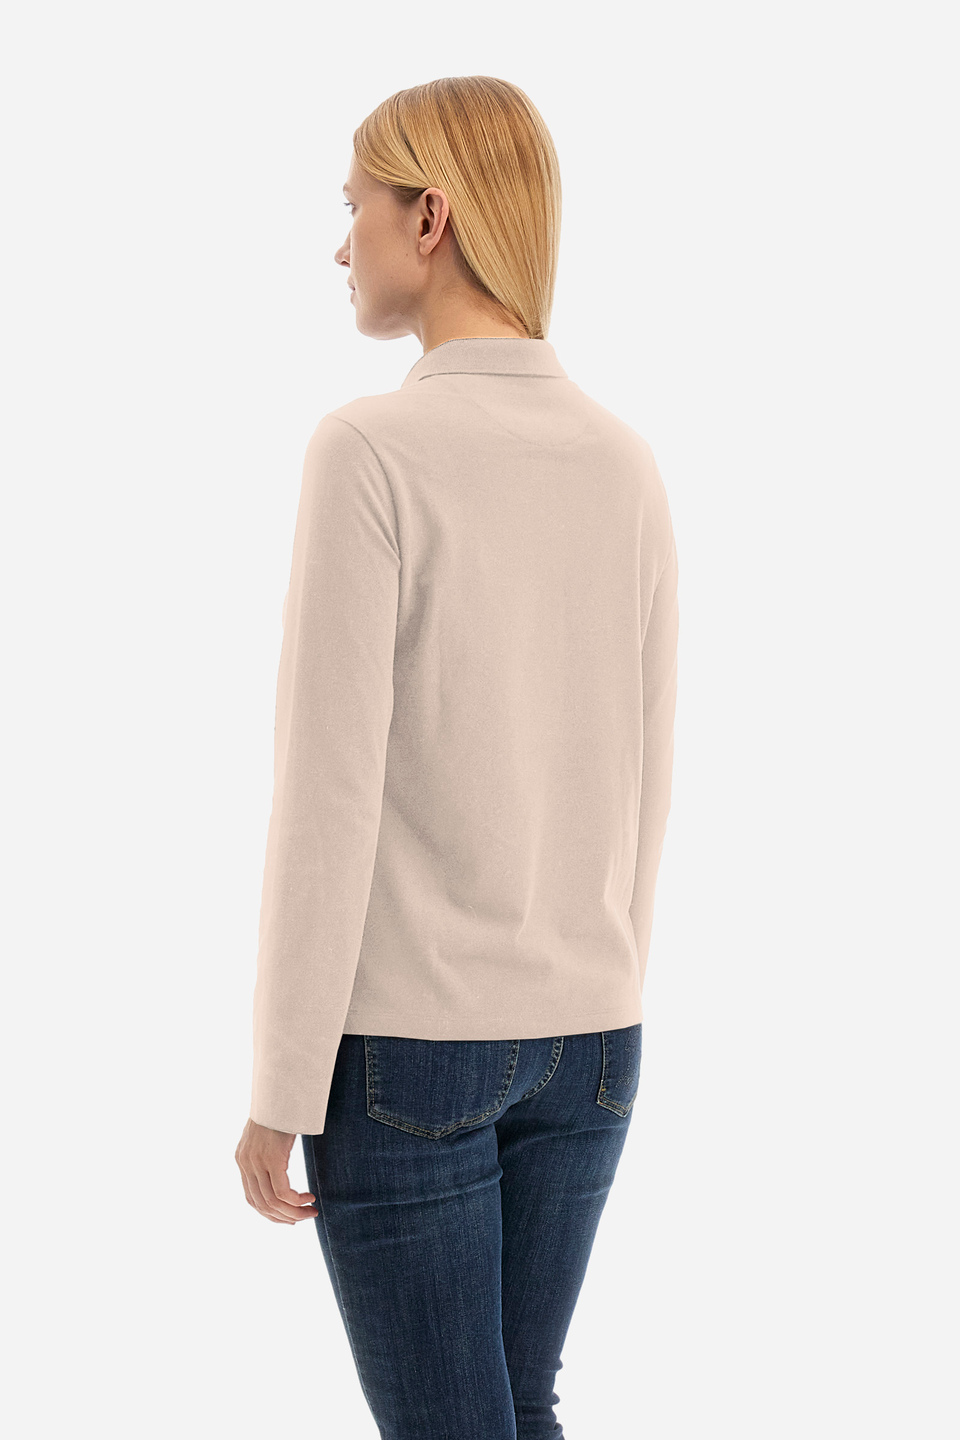 Damen -Poloshirt regular fit - Wladyslawa | La Martina - Official Online Shop